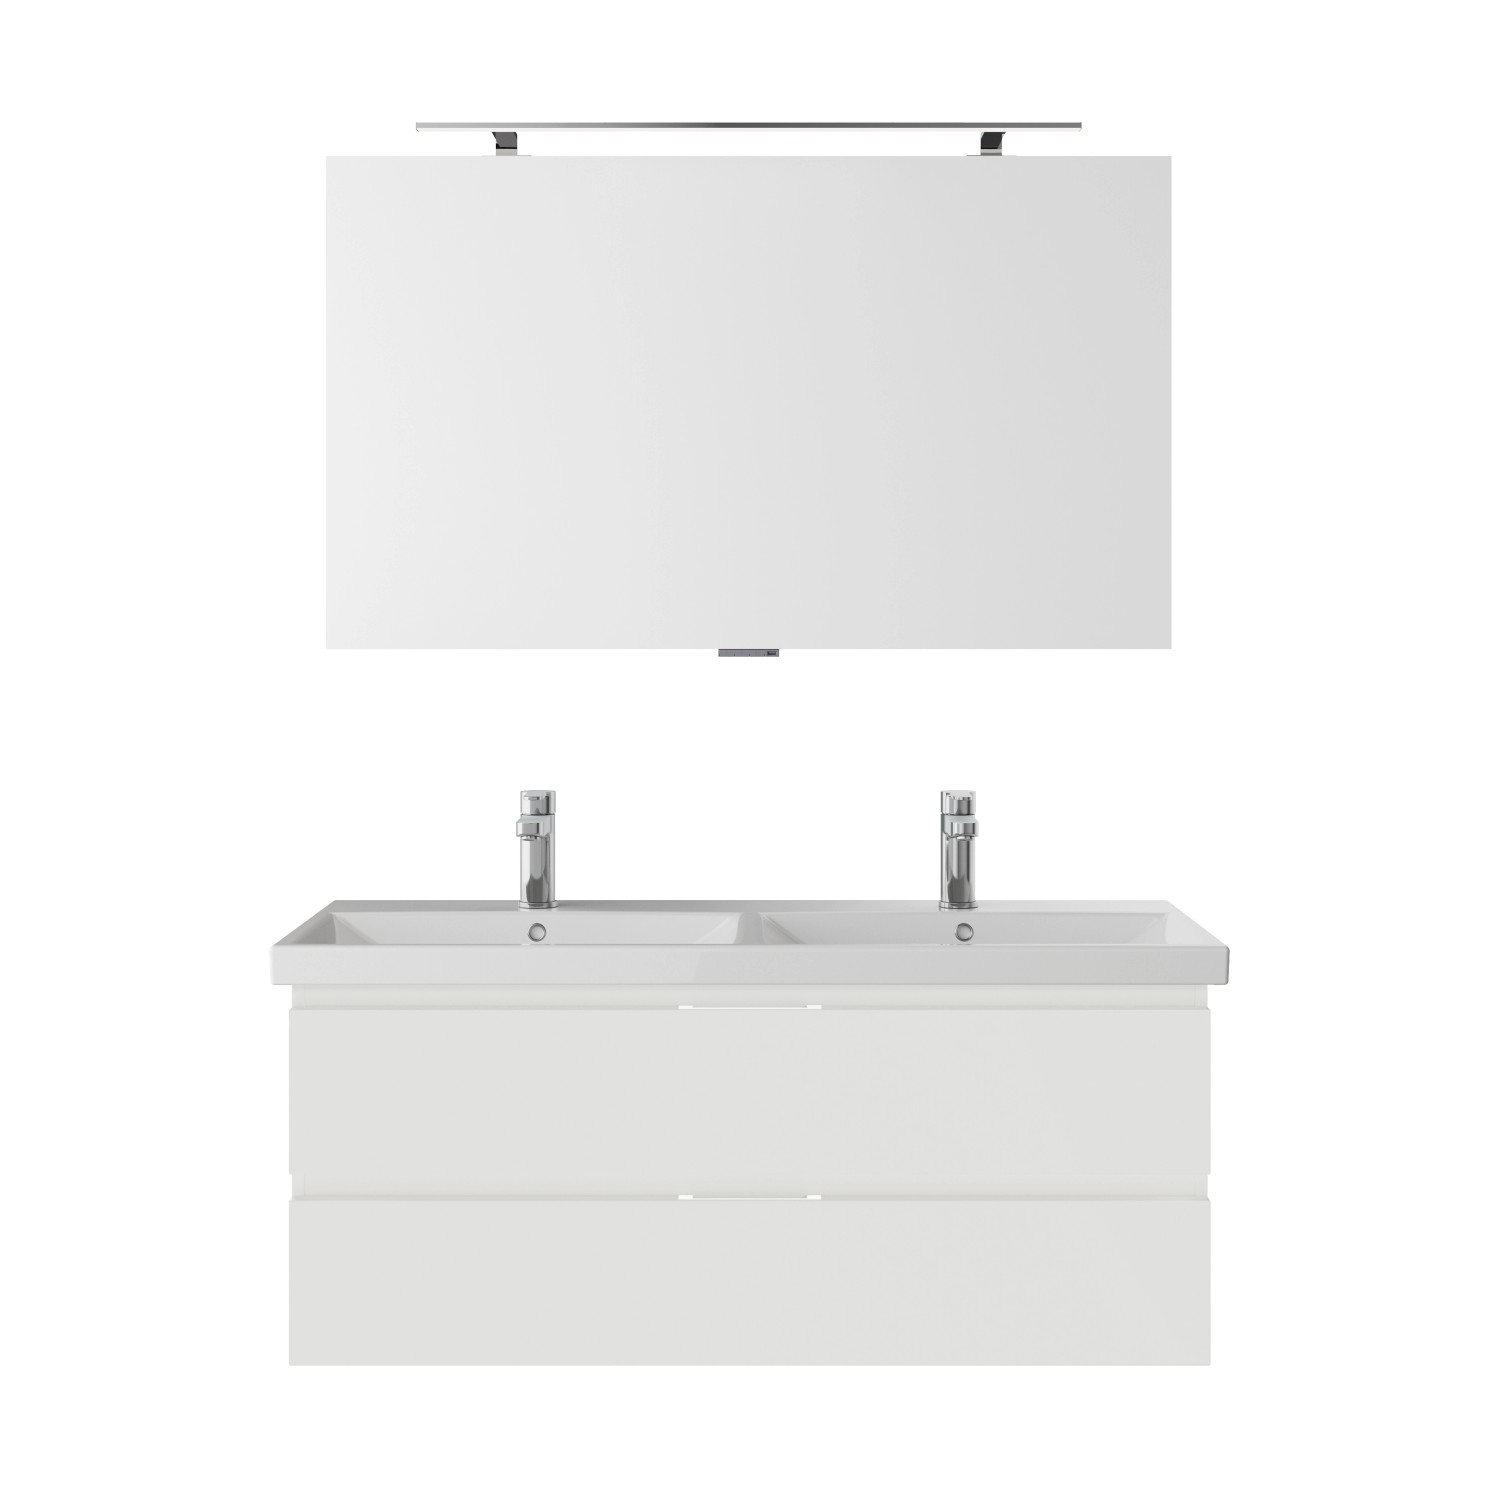 Pelipal Badmöbel-Set Serie 4035 3-teilig grifflos in Weiß Glanz mit Spiegel von Pelipal